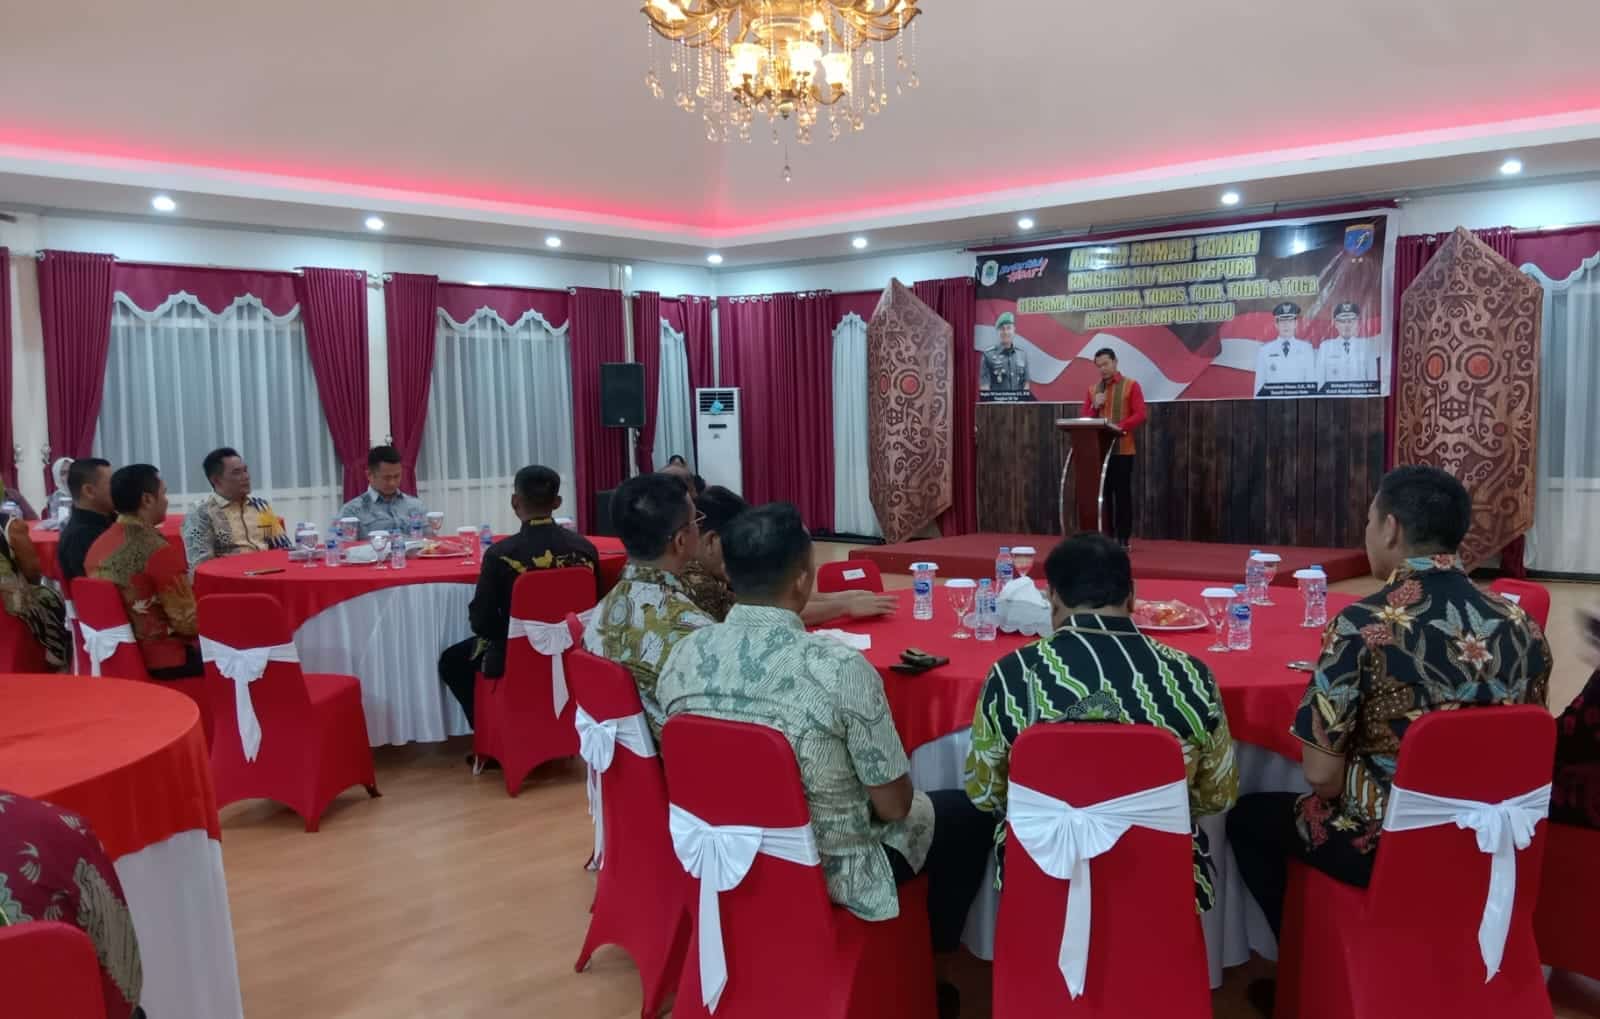 Pangdam XII Tanjungpura, Mayjen TNI Iwan Setiawan menghadiri ramah tamah di Kabupaten Kapuas Hulu. (Foto: Ishaq)